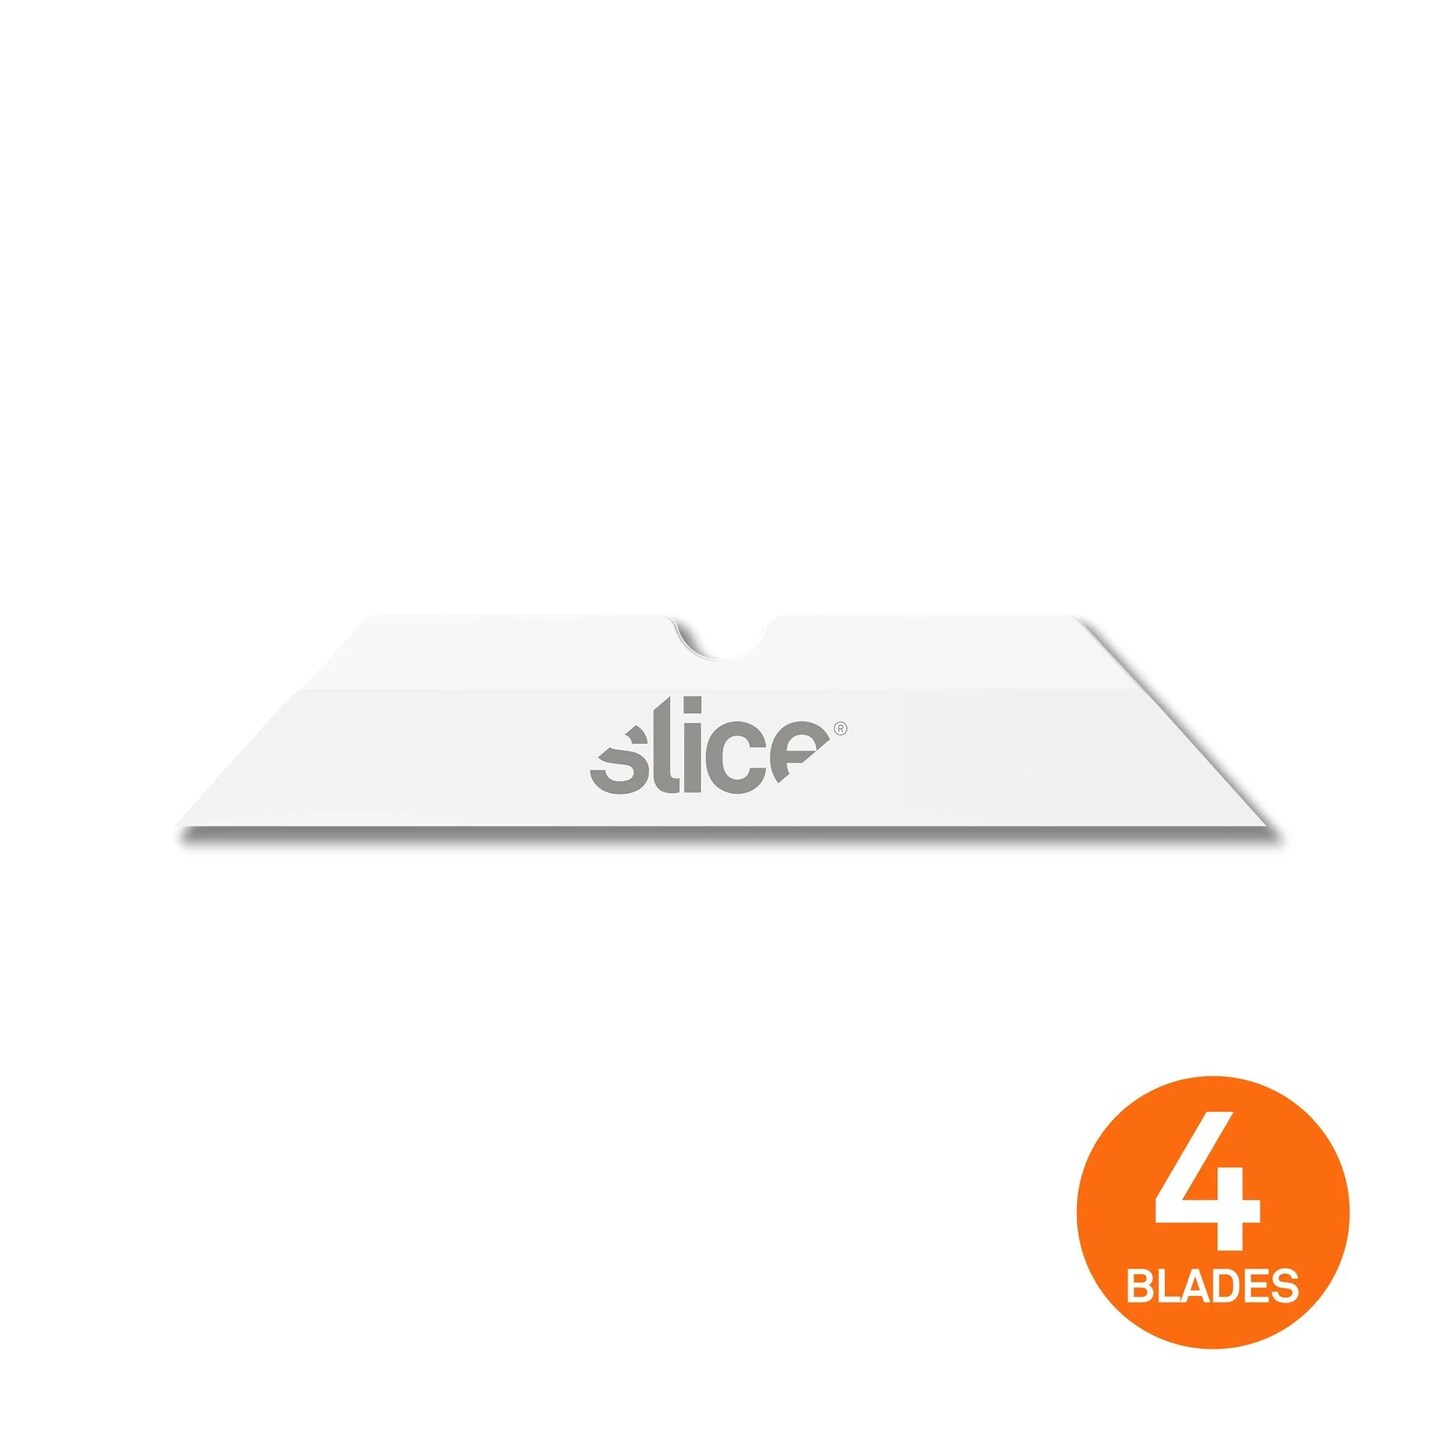 Slice Manual Mini Cutter 10515